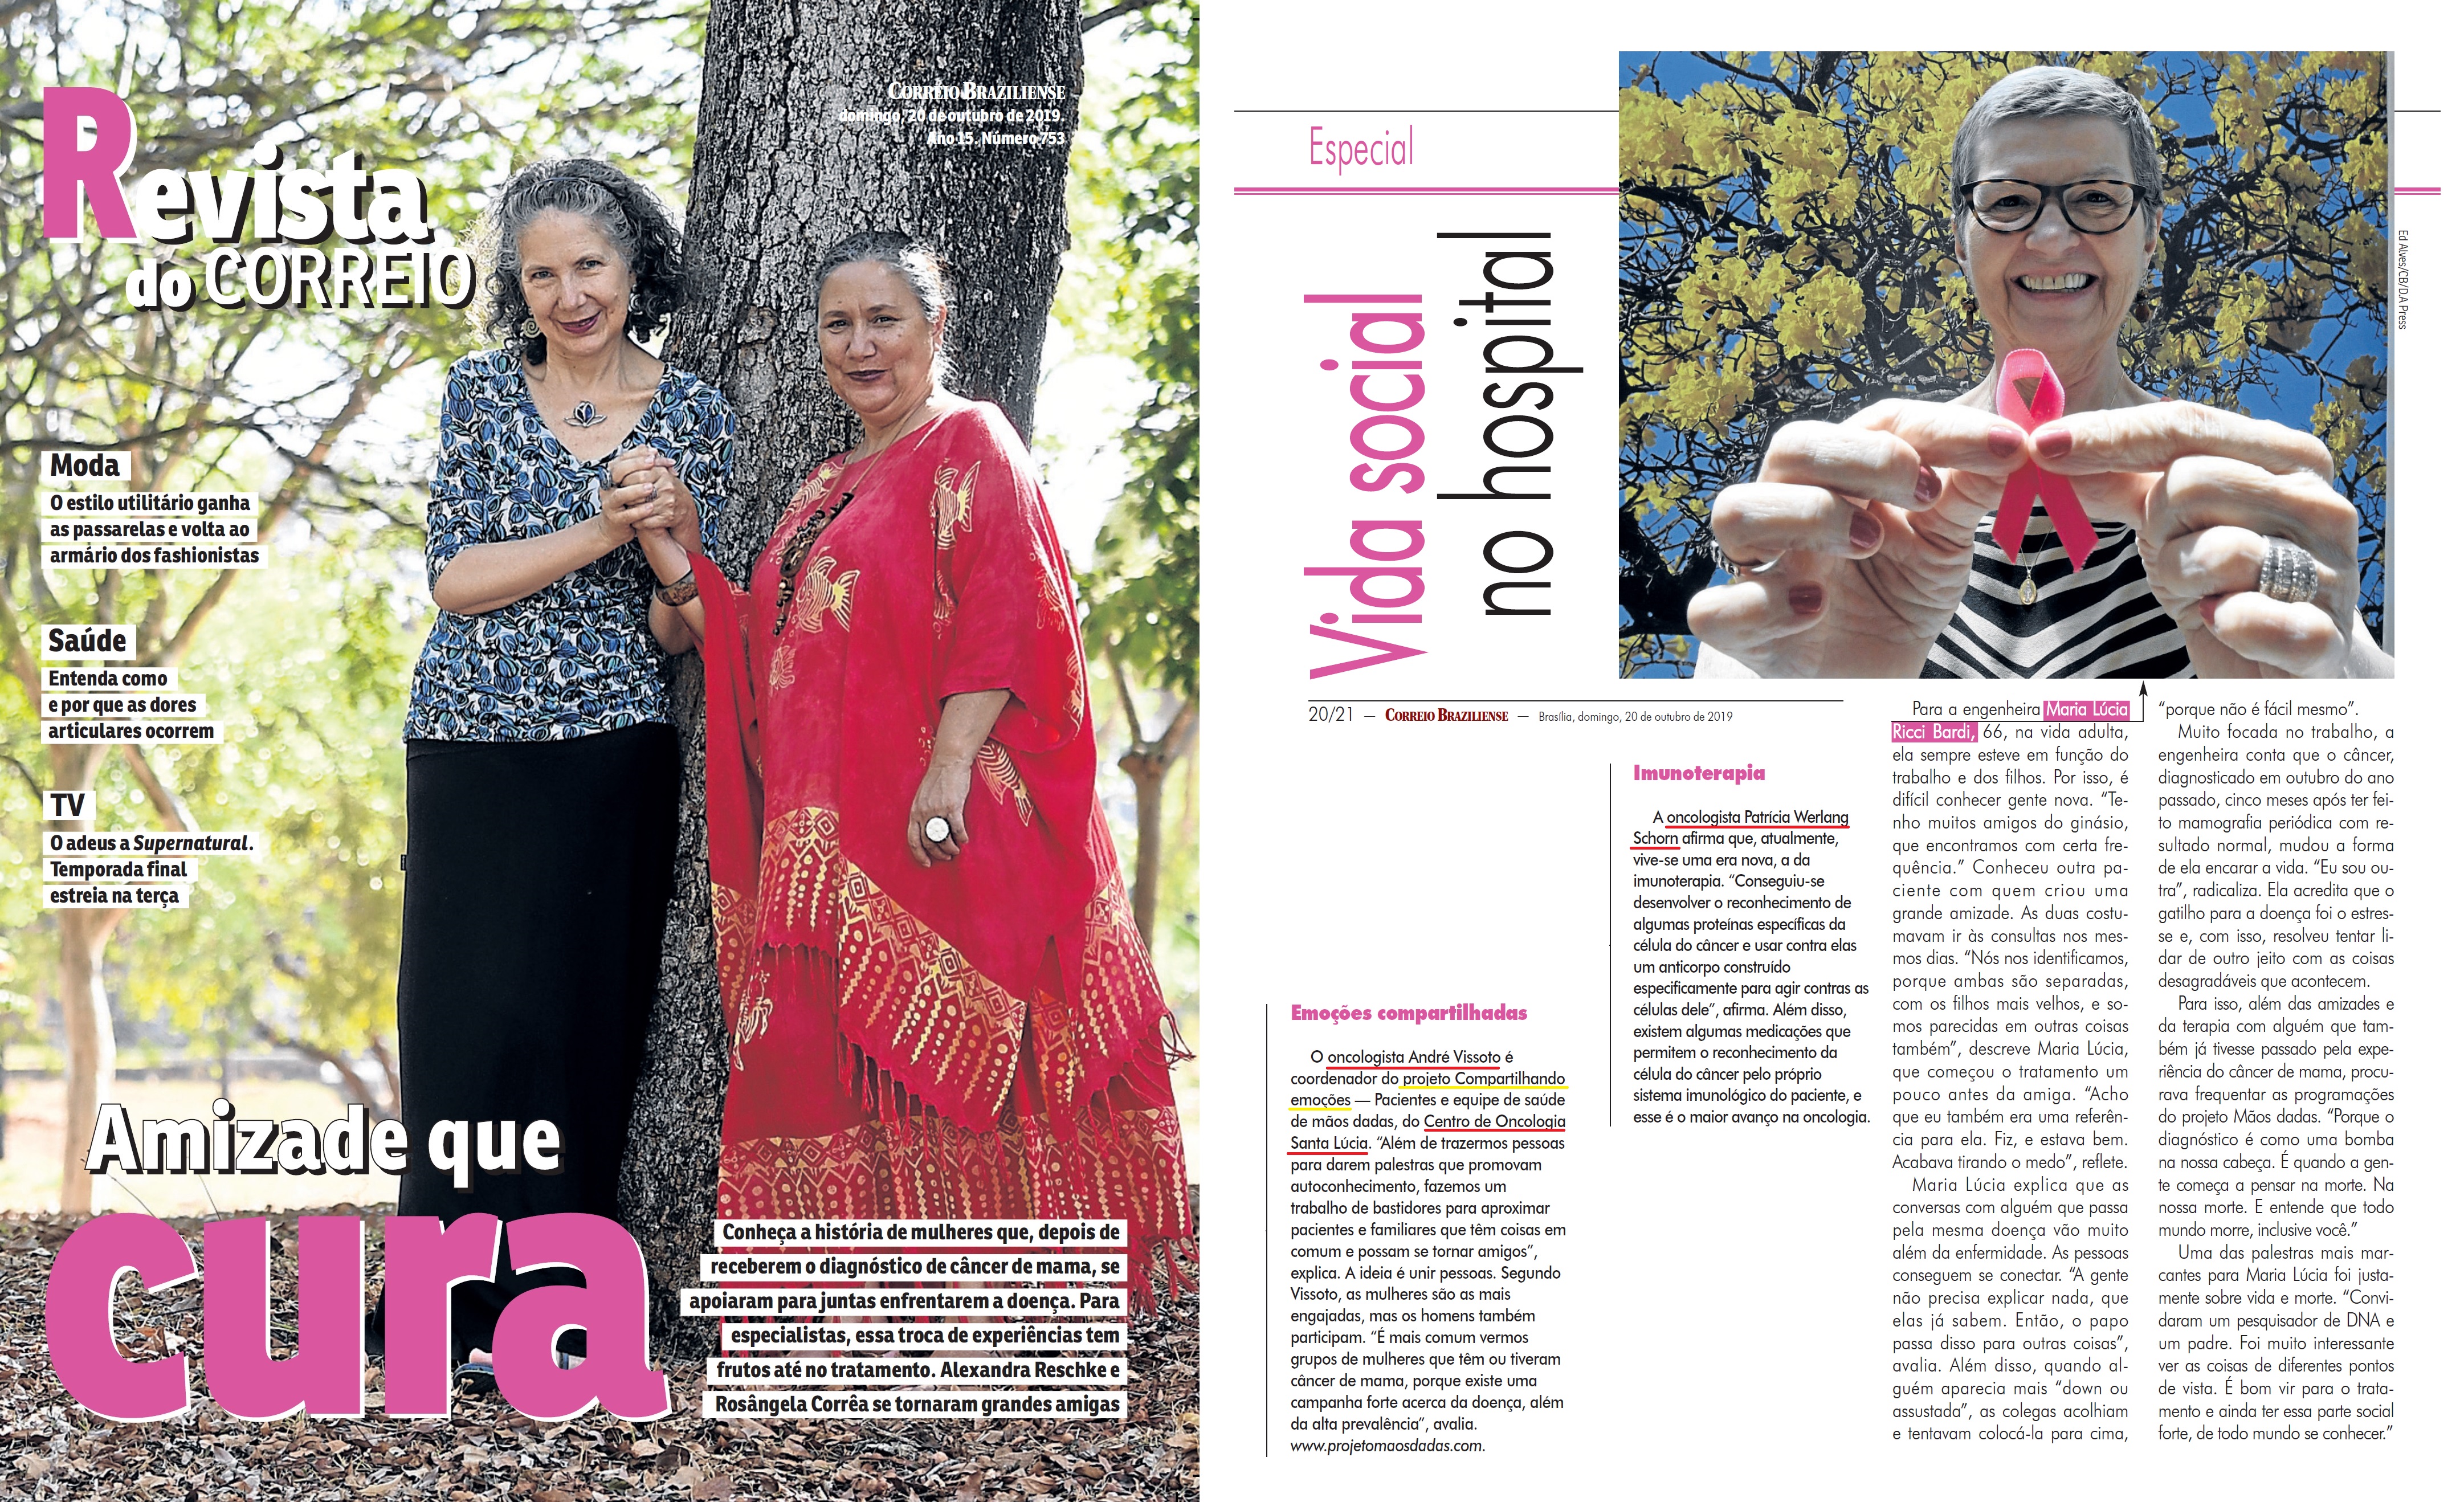 Revista do Correio - Outubro Rosa HSLS - 21-10-2019